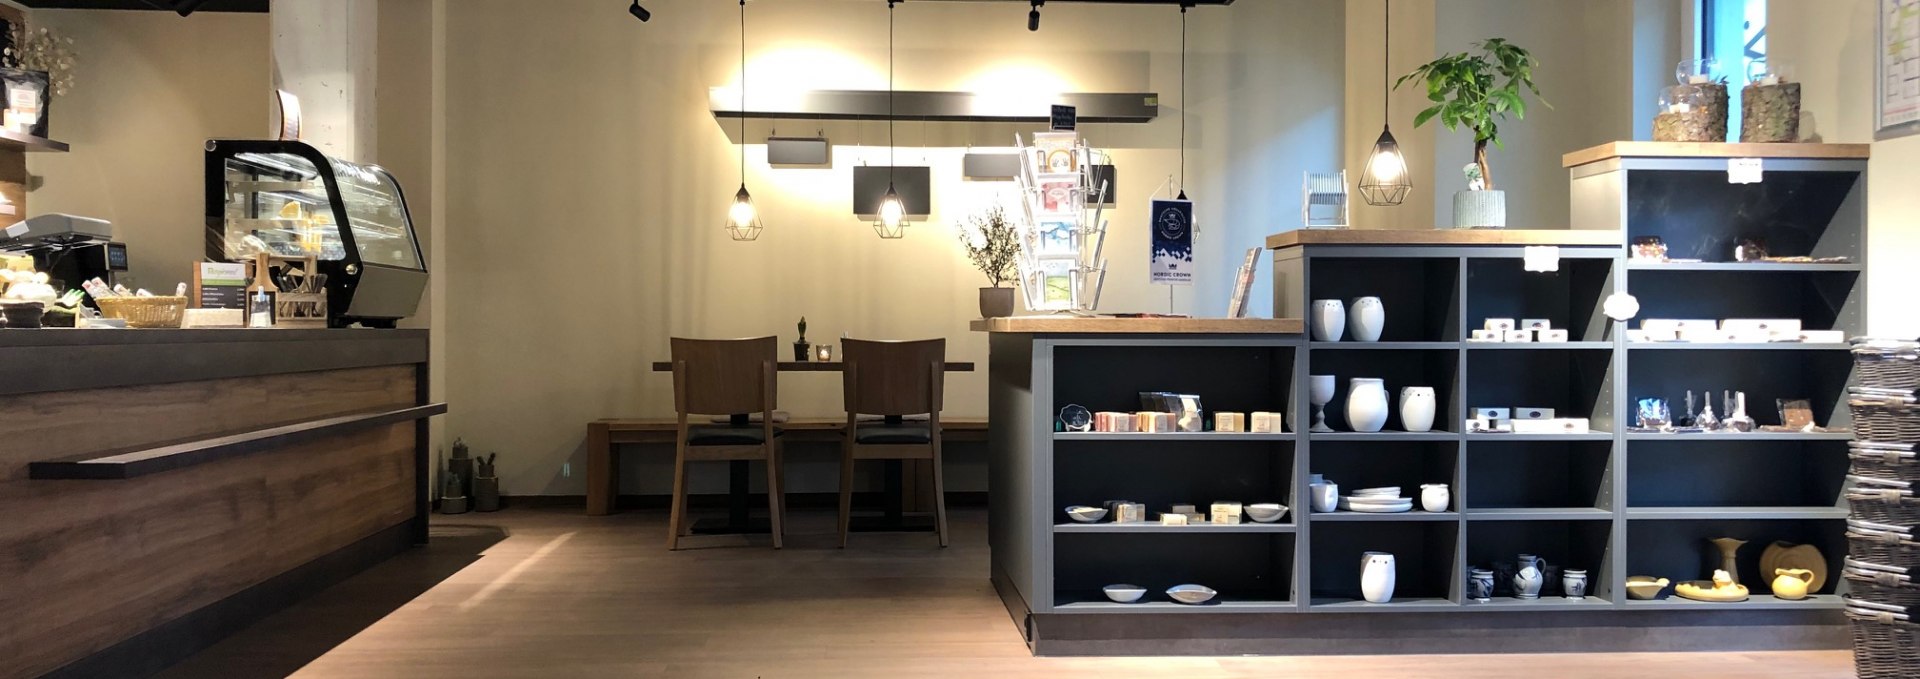 Regionalladen mit Kaffeeecke, © N. Krüger